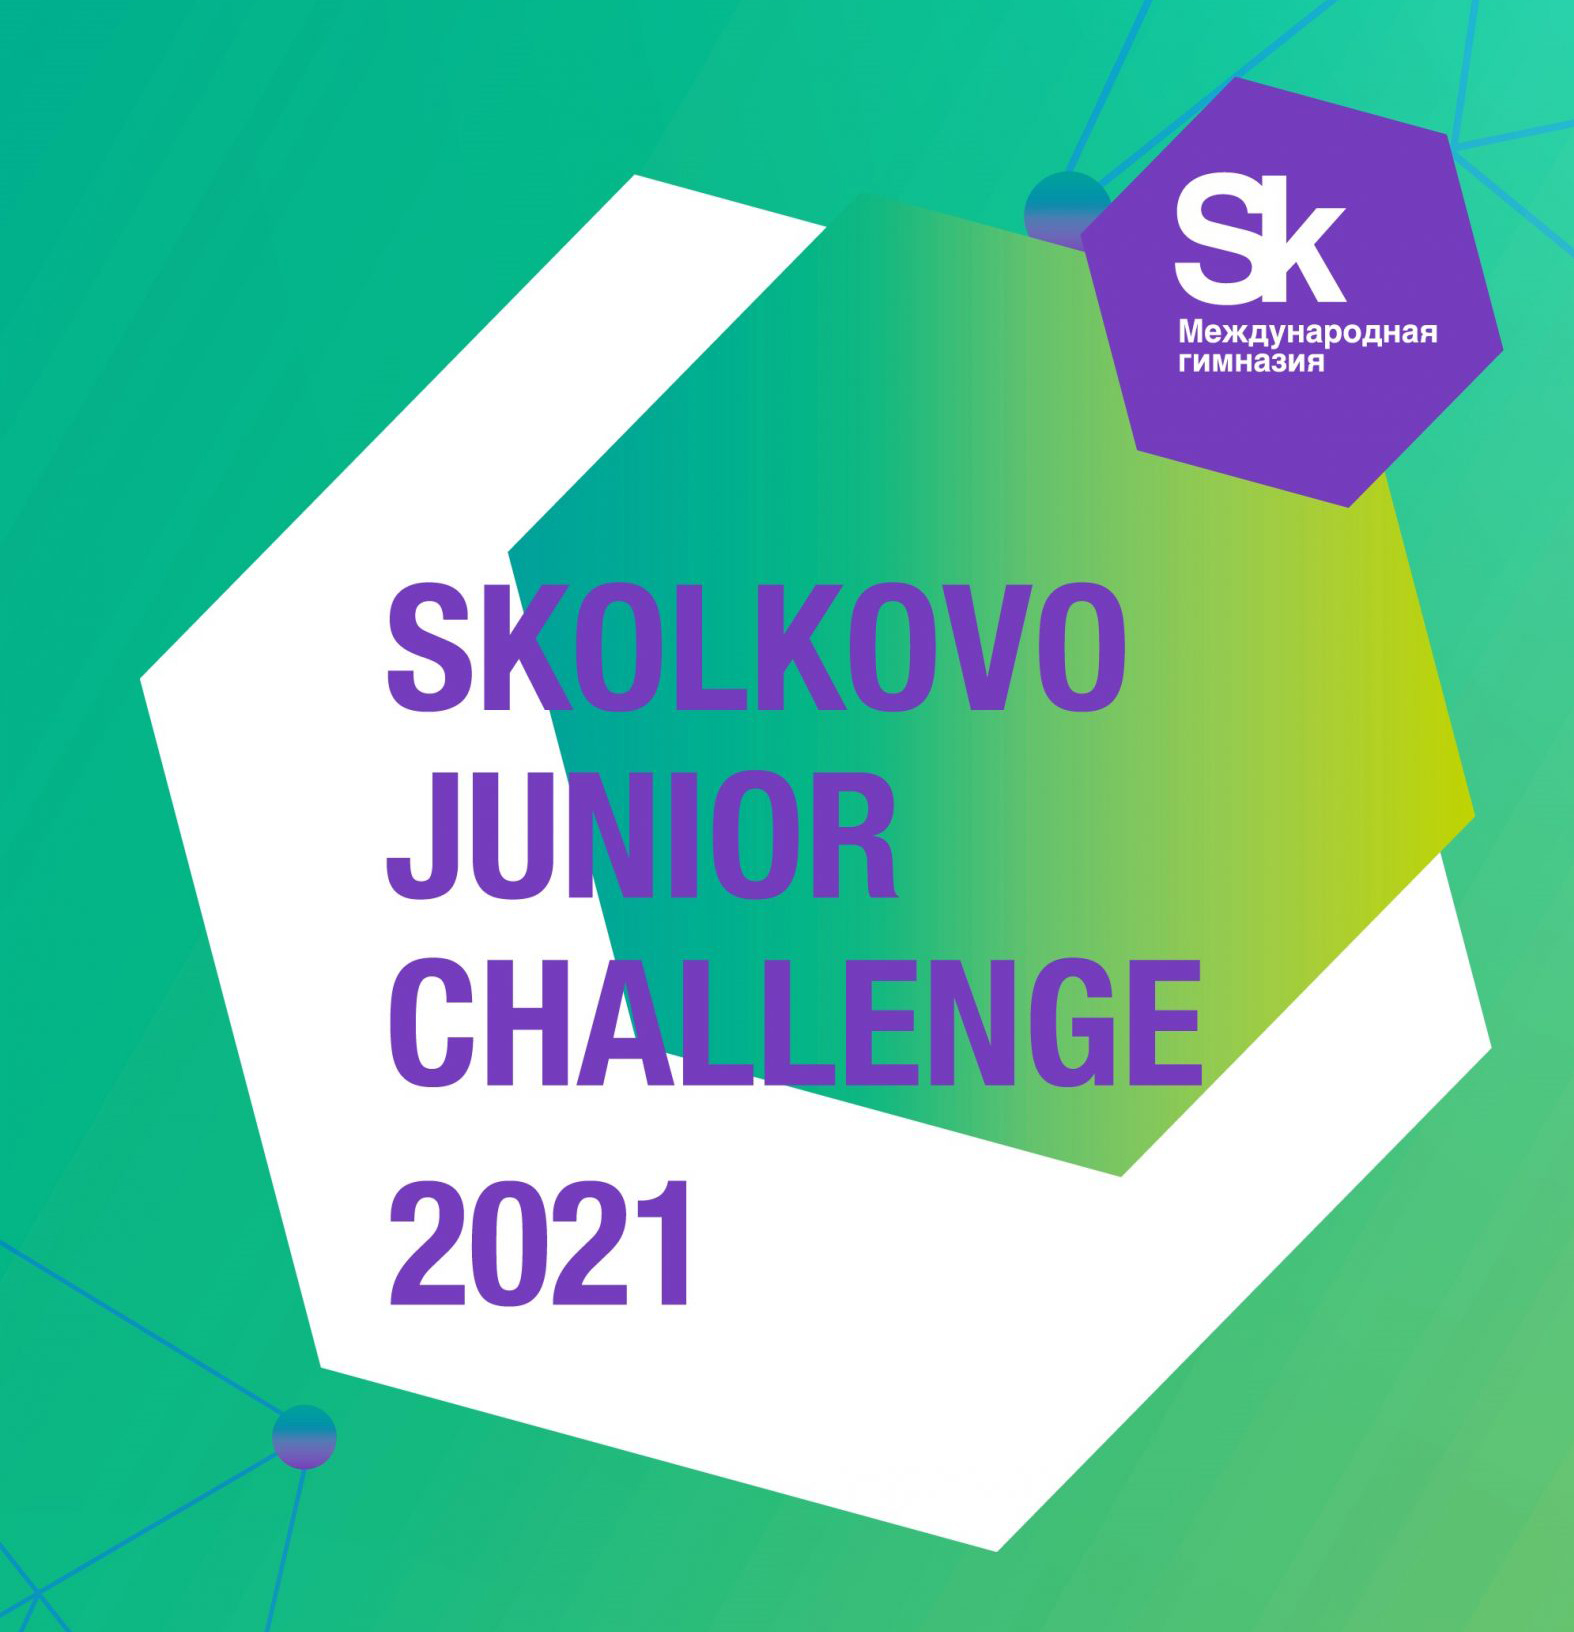 Юные инноваторы могут принять участие в олимпиаде Skolkovo Junior Challenge 2021